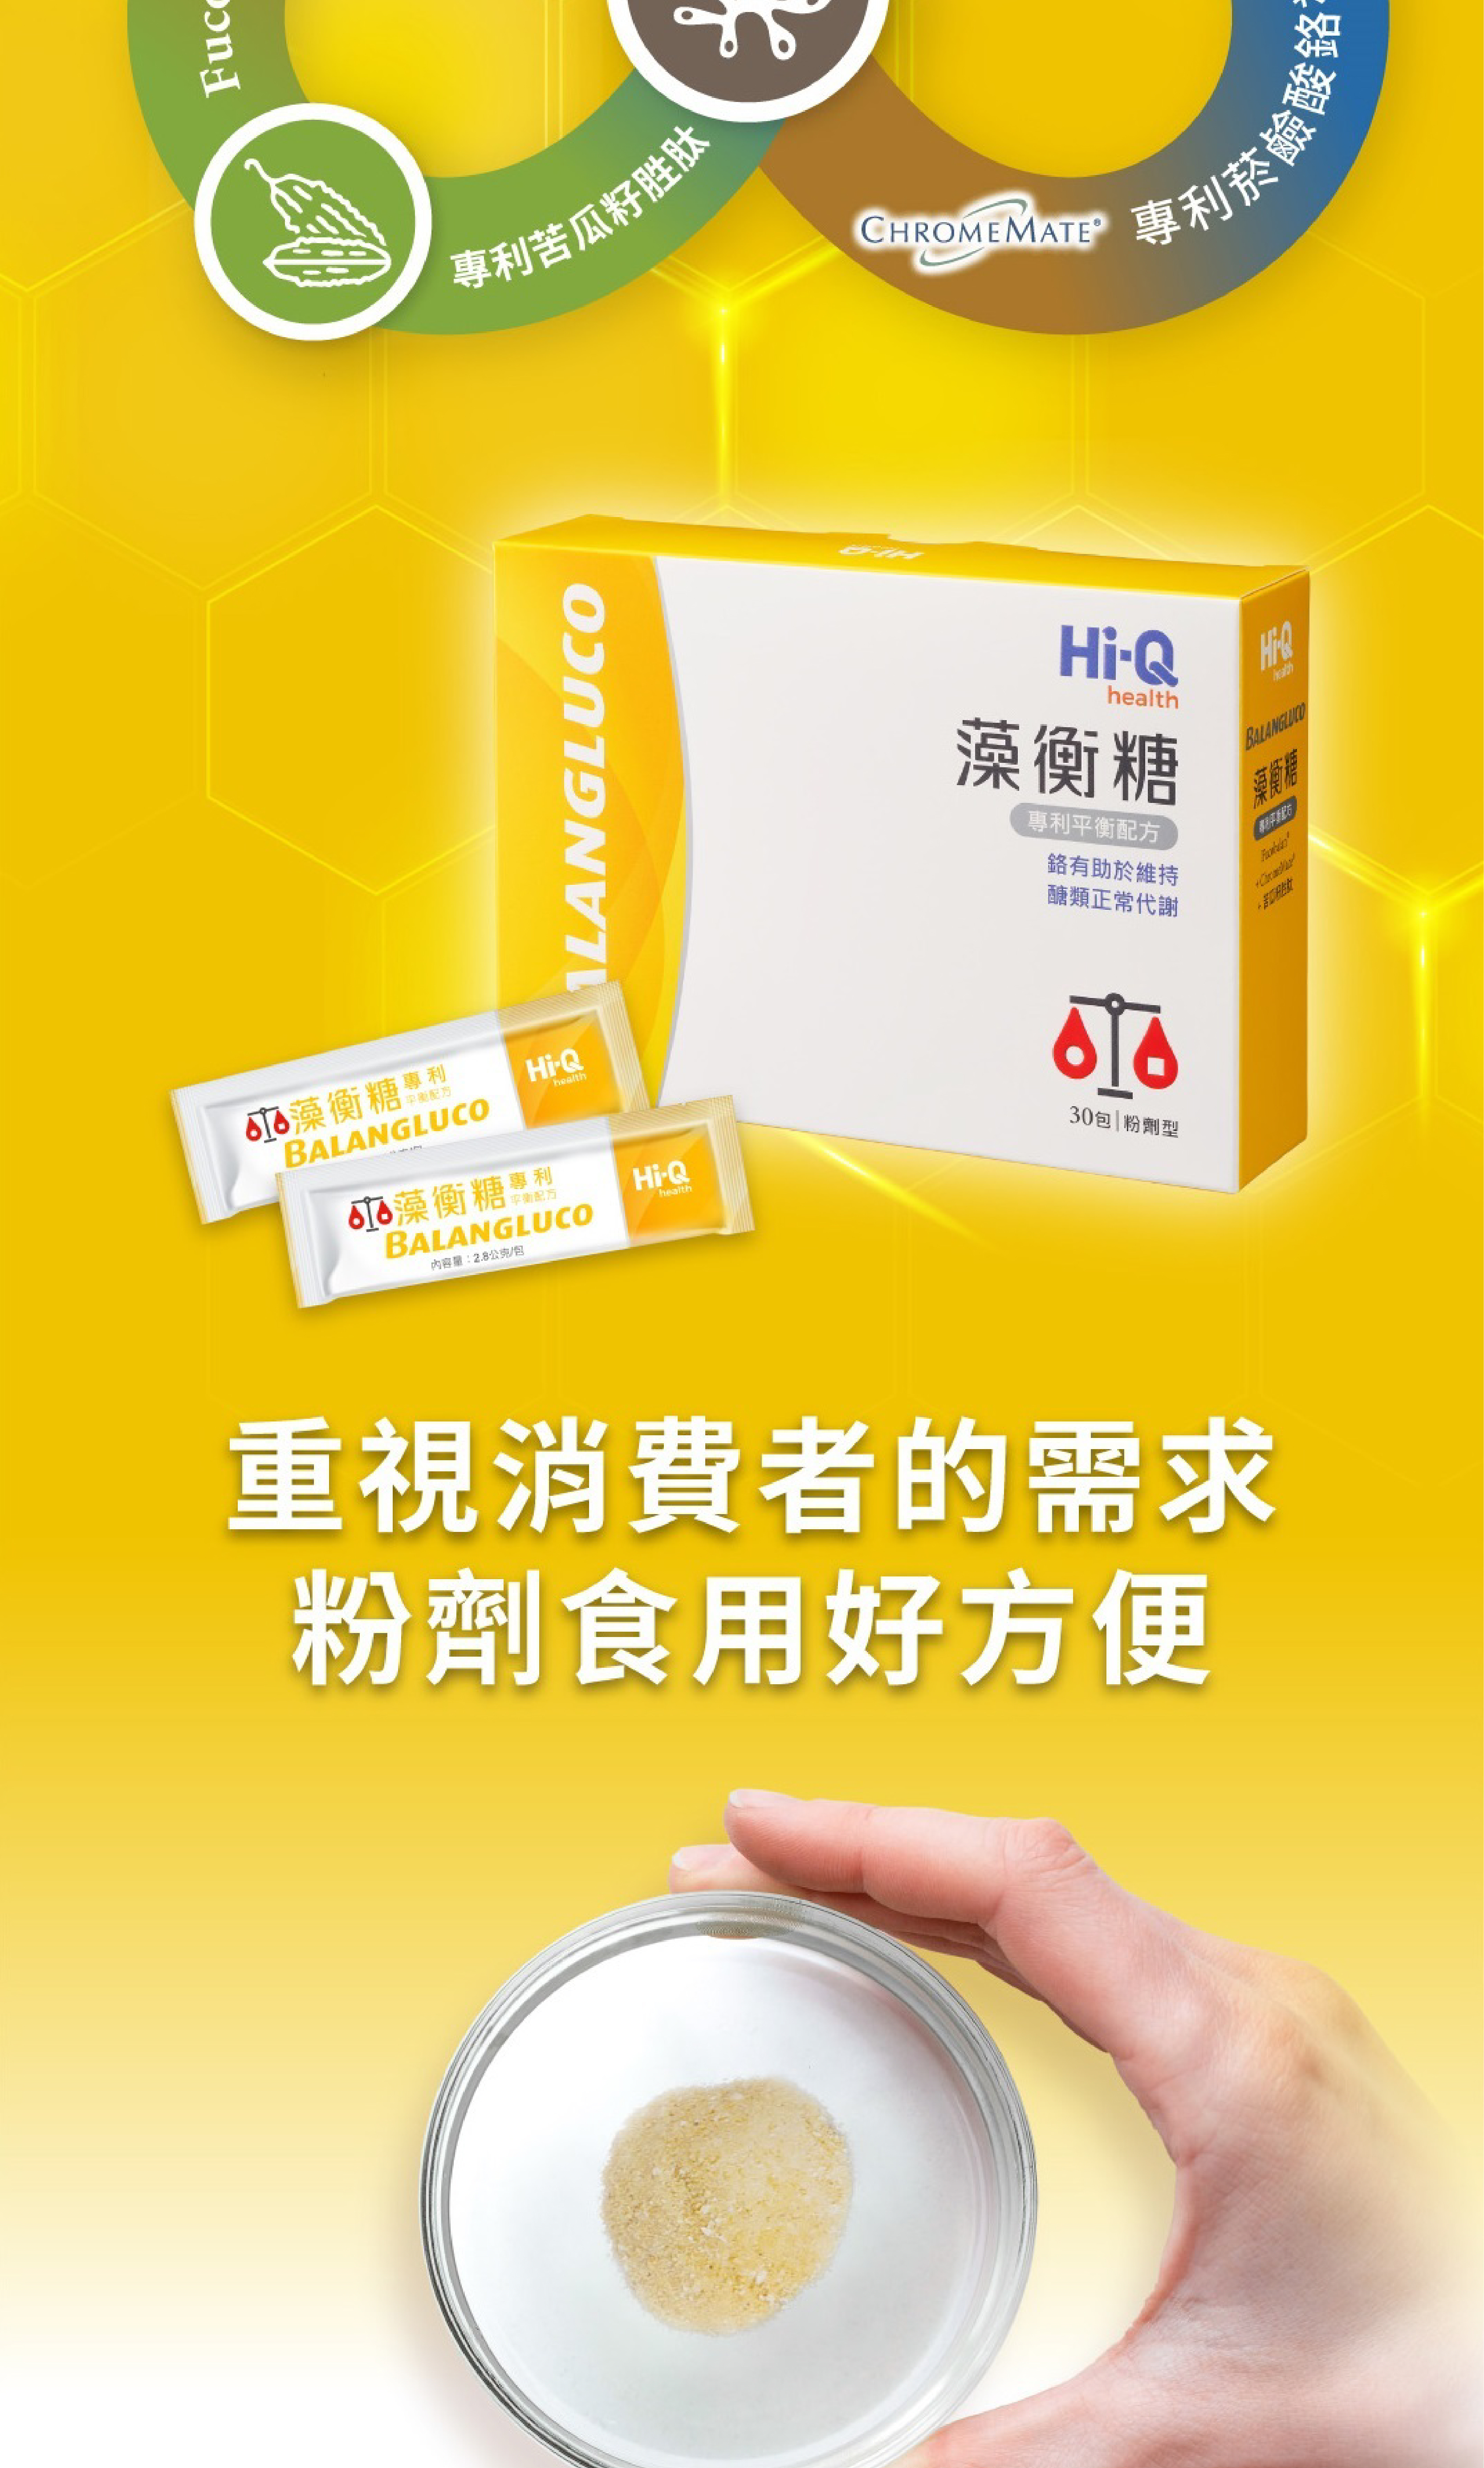 【Hi-Q】藻衡糖 專利平衡配方粉劑 新包裝